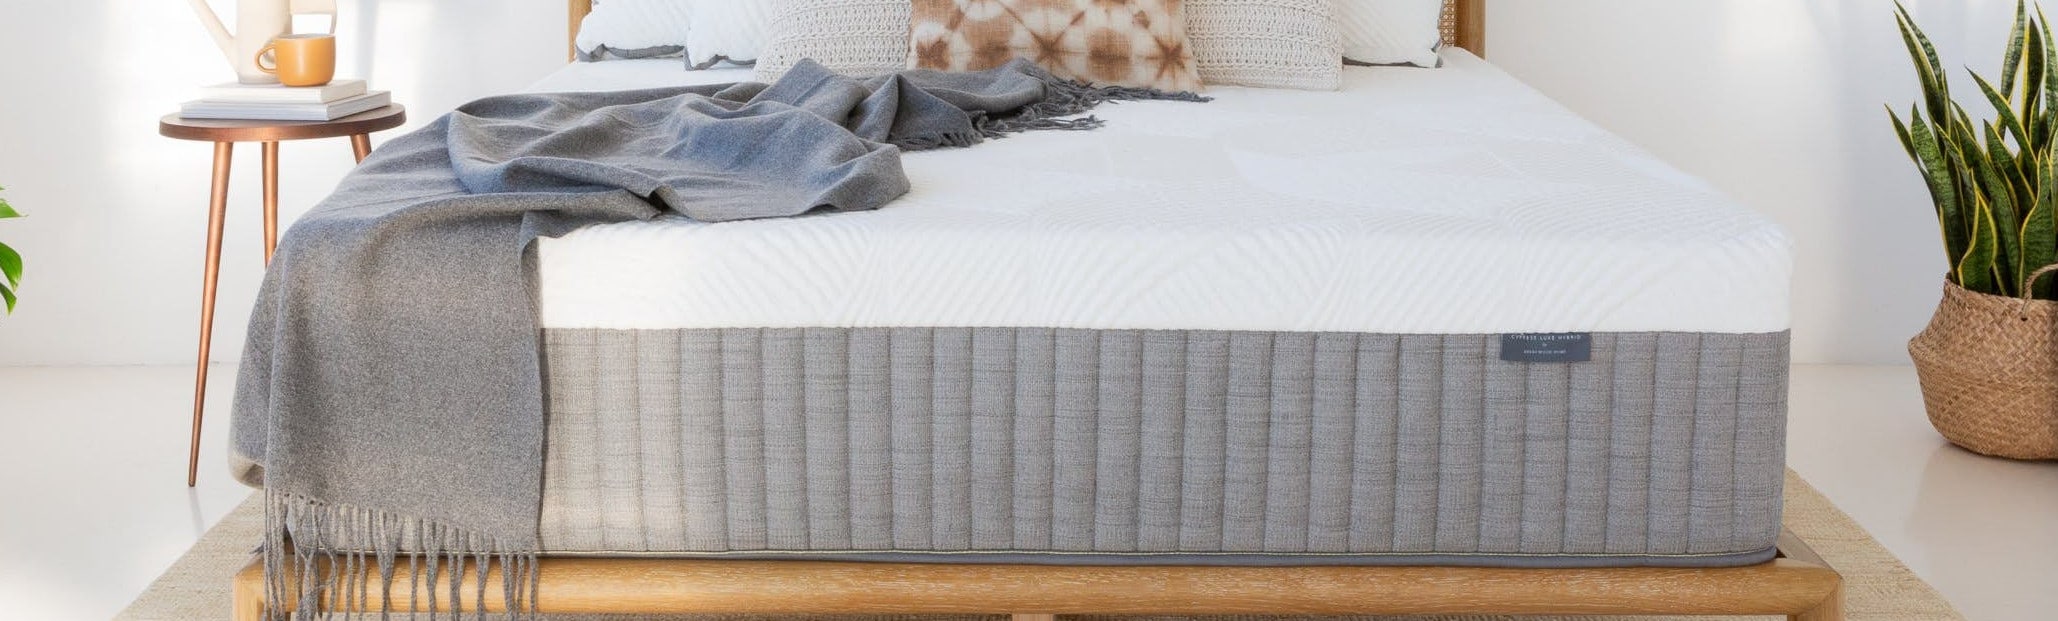 best memory foam mattress on a budget